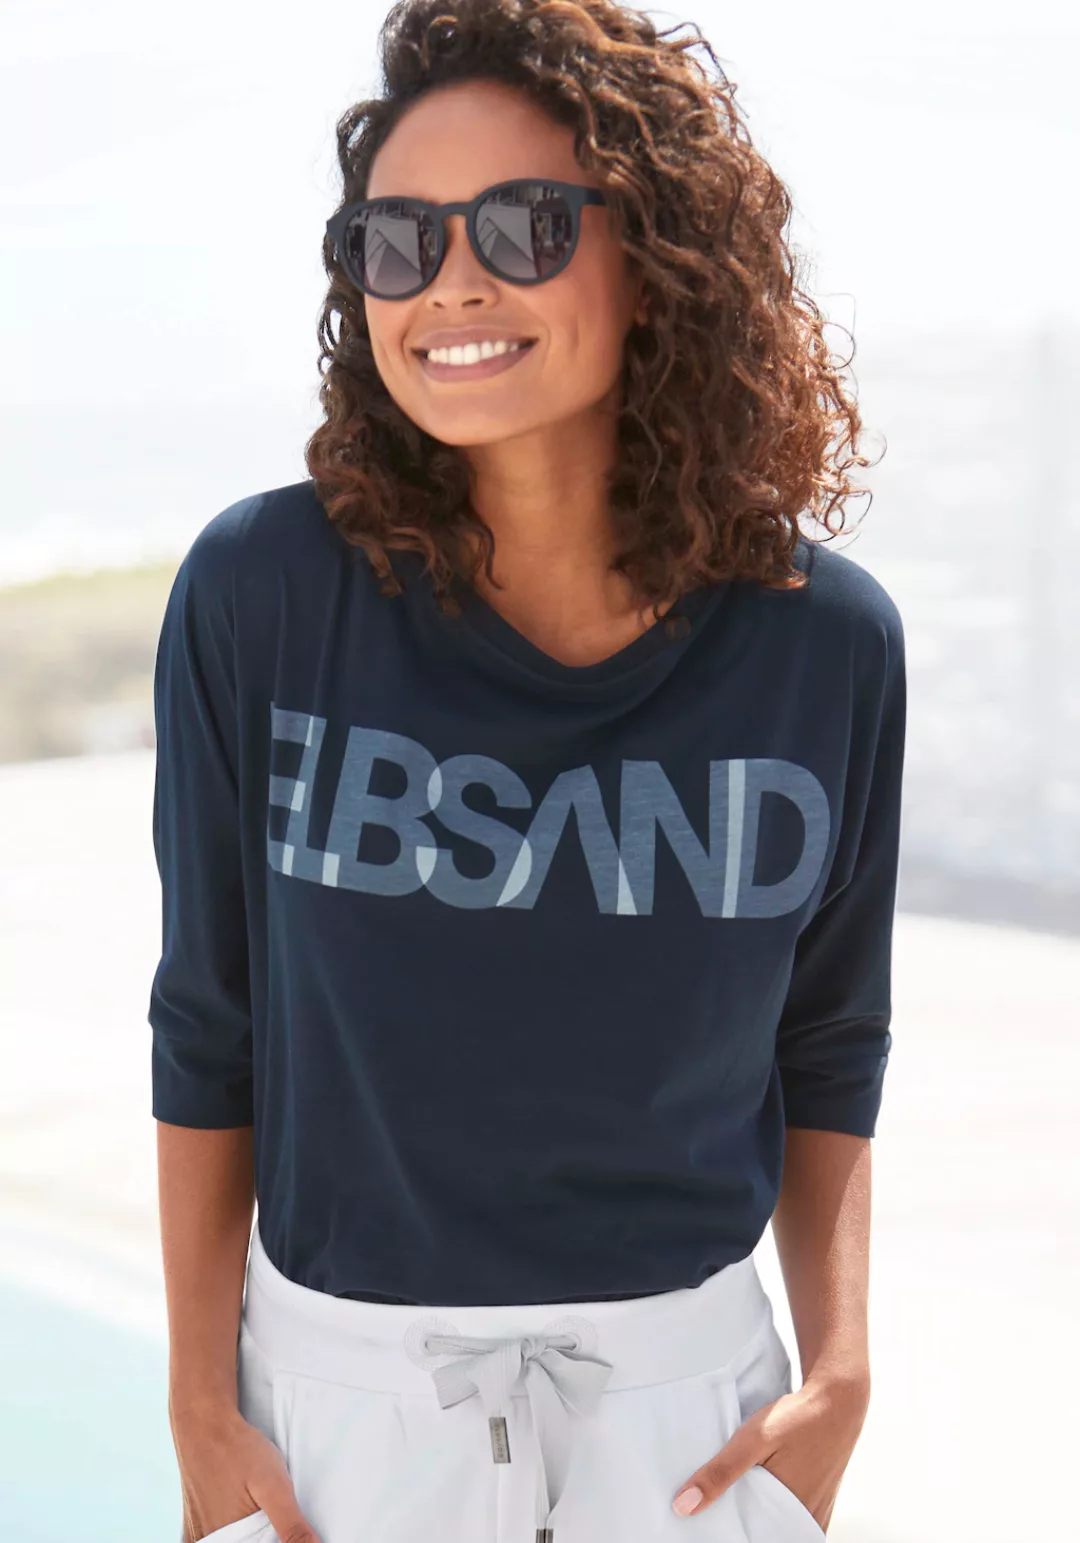 Elbsand 3/4-Arm-Shirt mit Logodruck, Baumwoll-Mix, lockere Passform günstig online kaufen